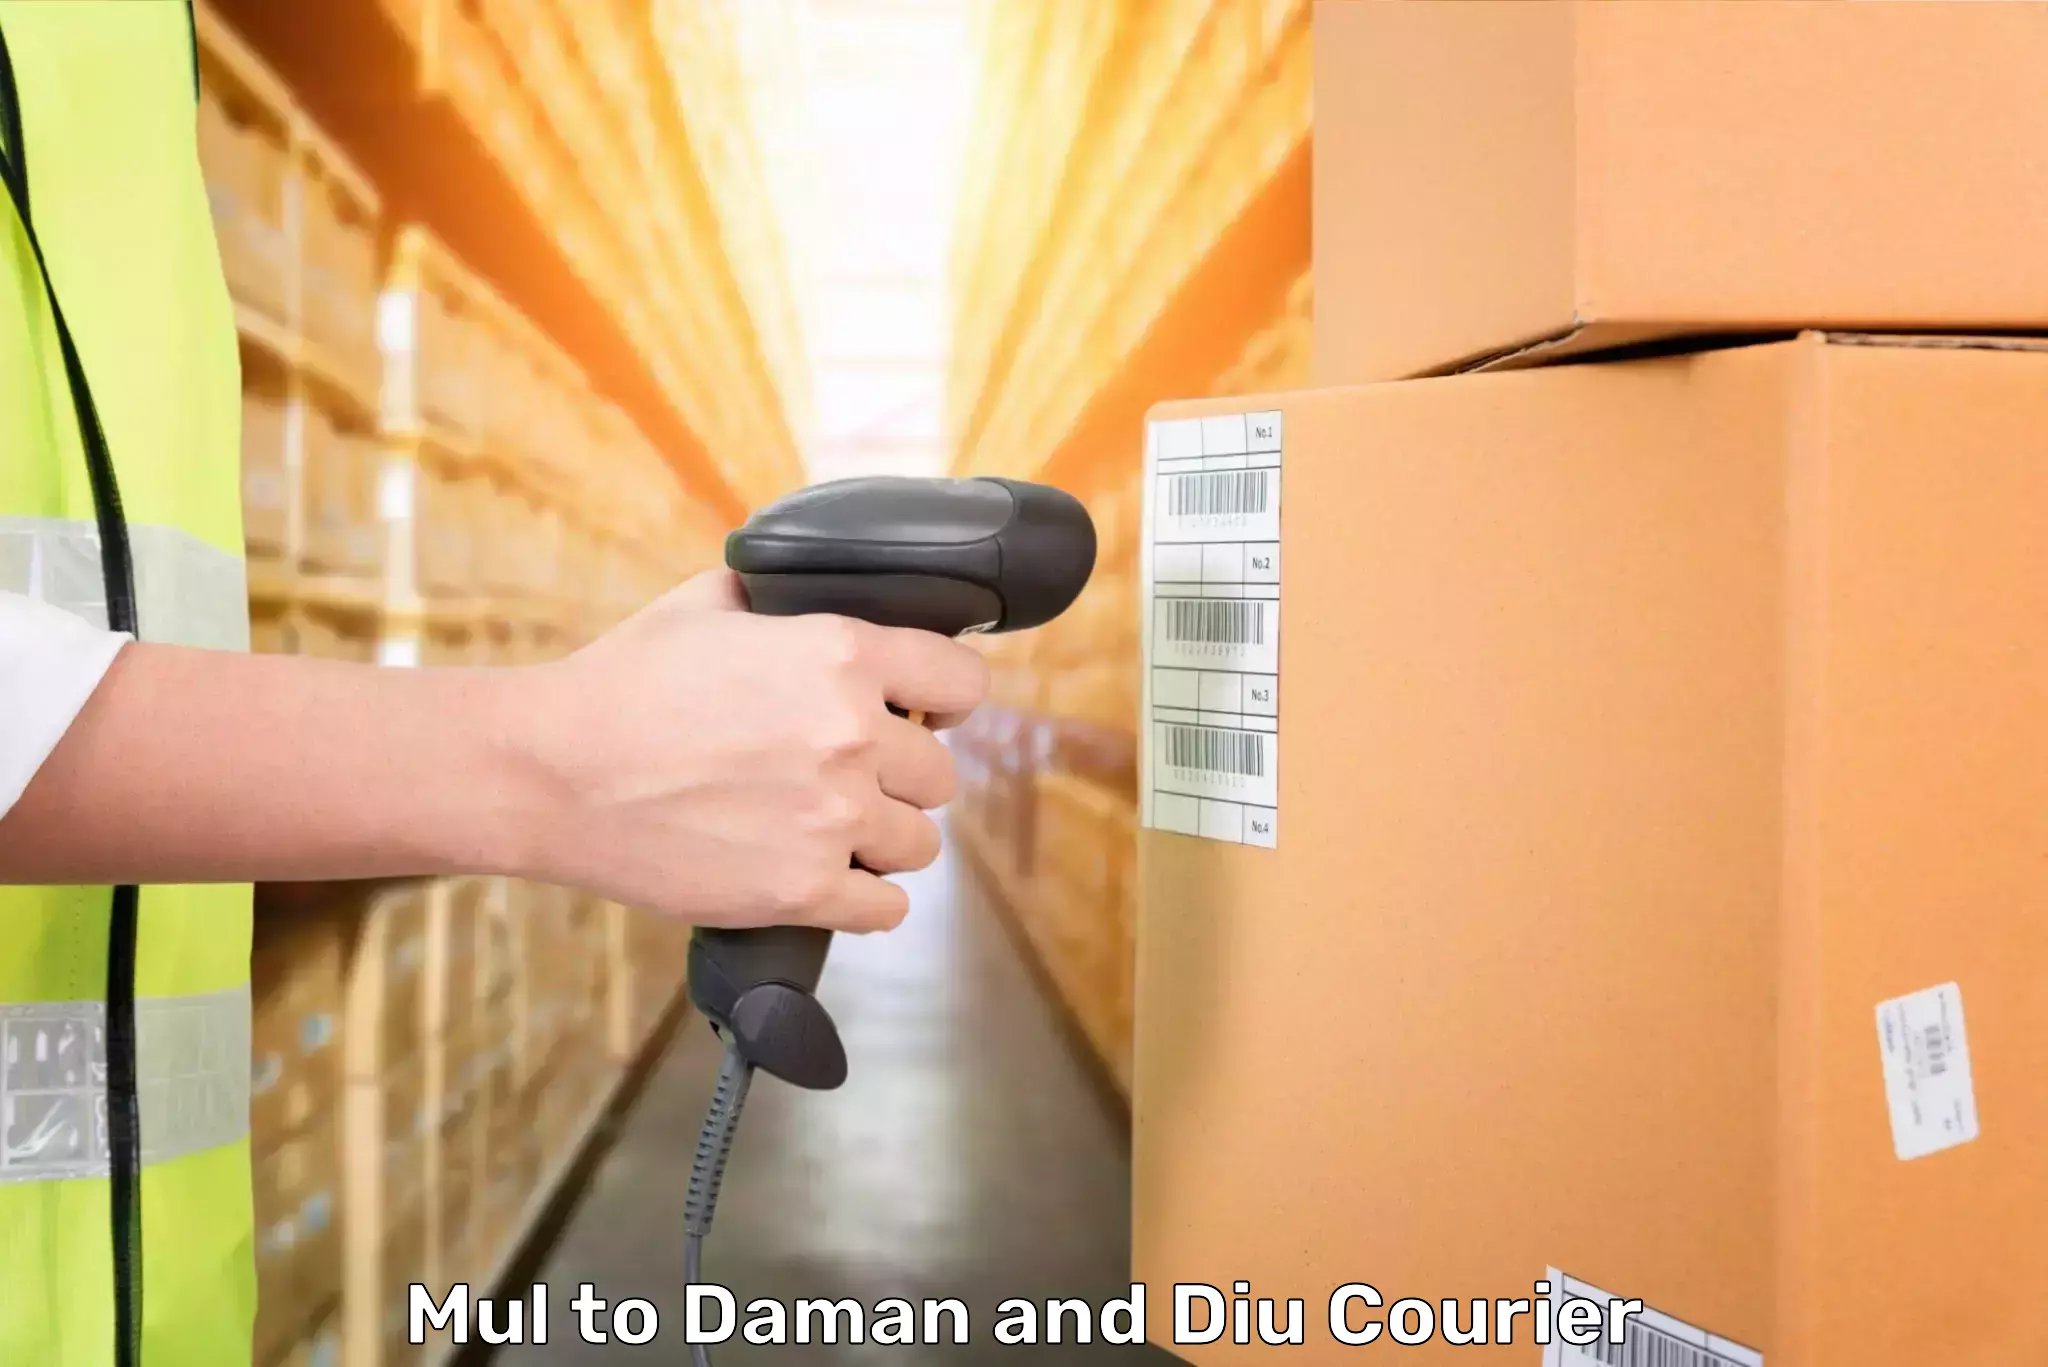 Door-to-door baggage service Mul to Daman